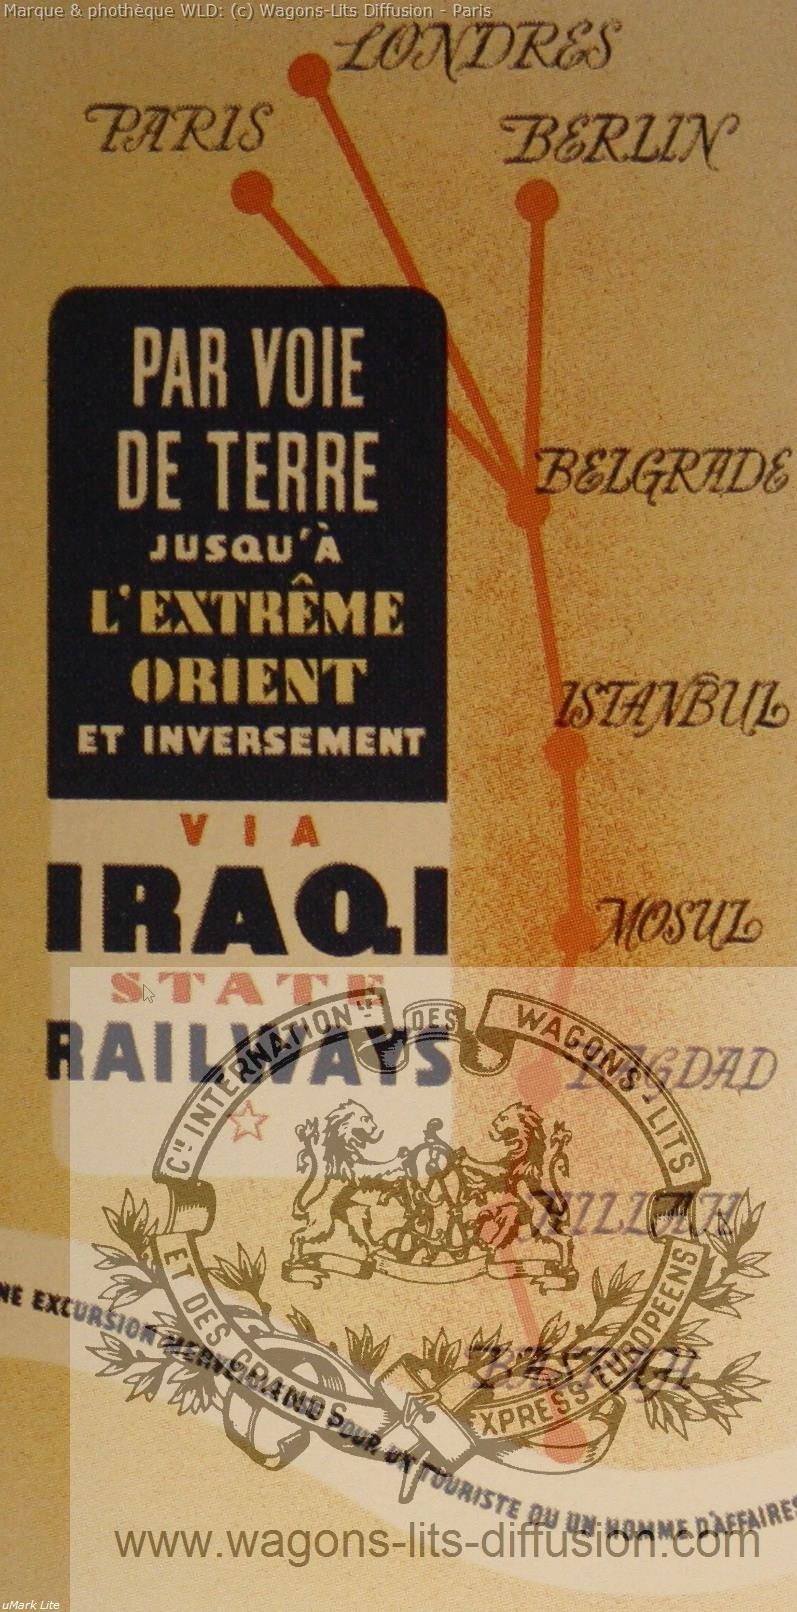 Wl affiche iraqi railways